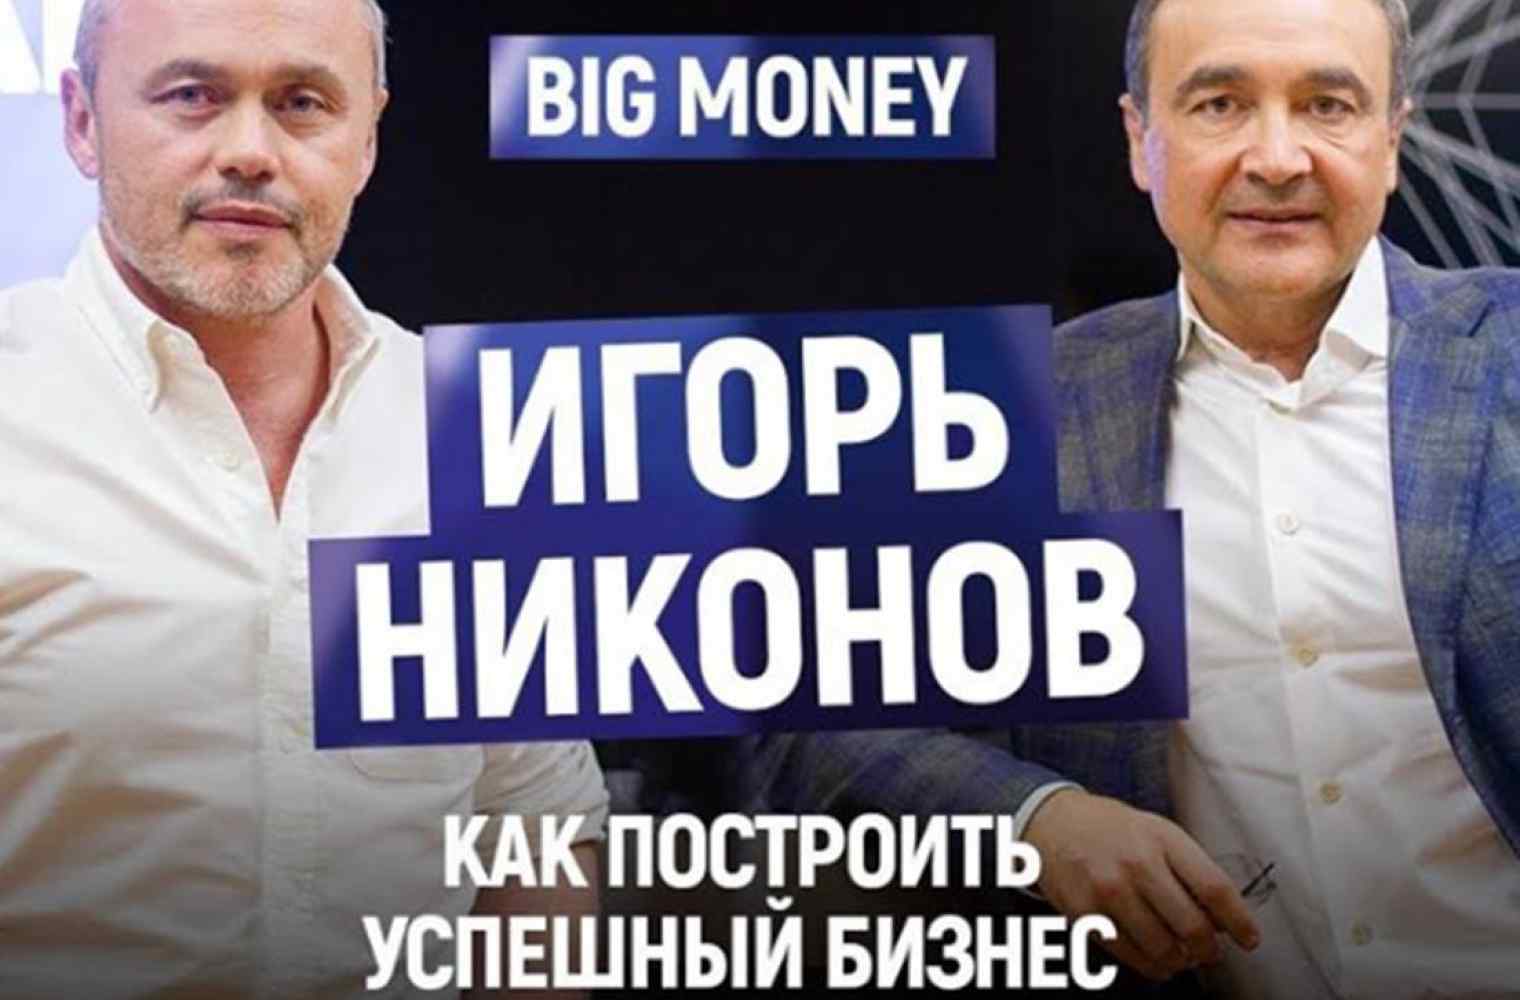 Інтерв'ю Ігоря Ніконова для проекту BigMoney з Євгеном Черняком